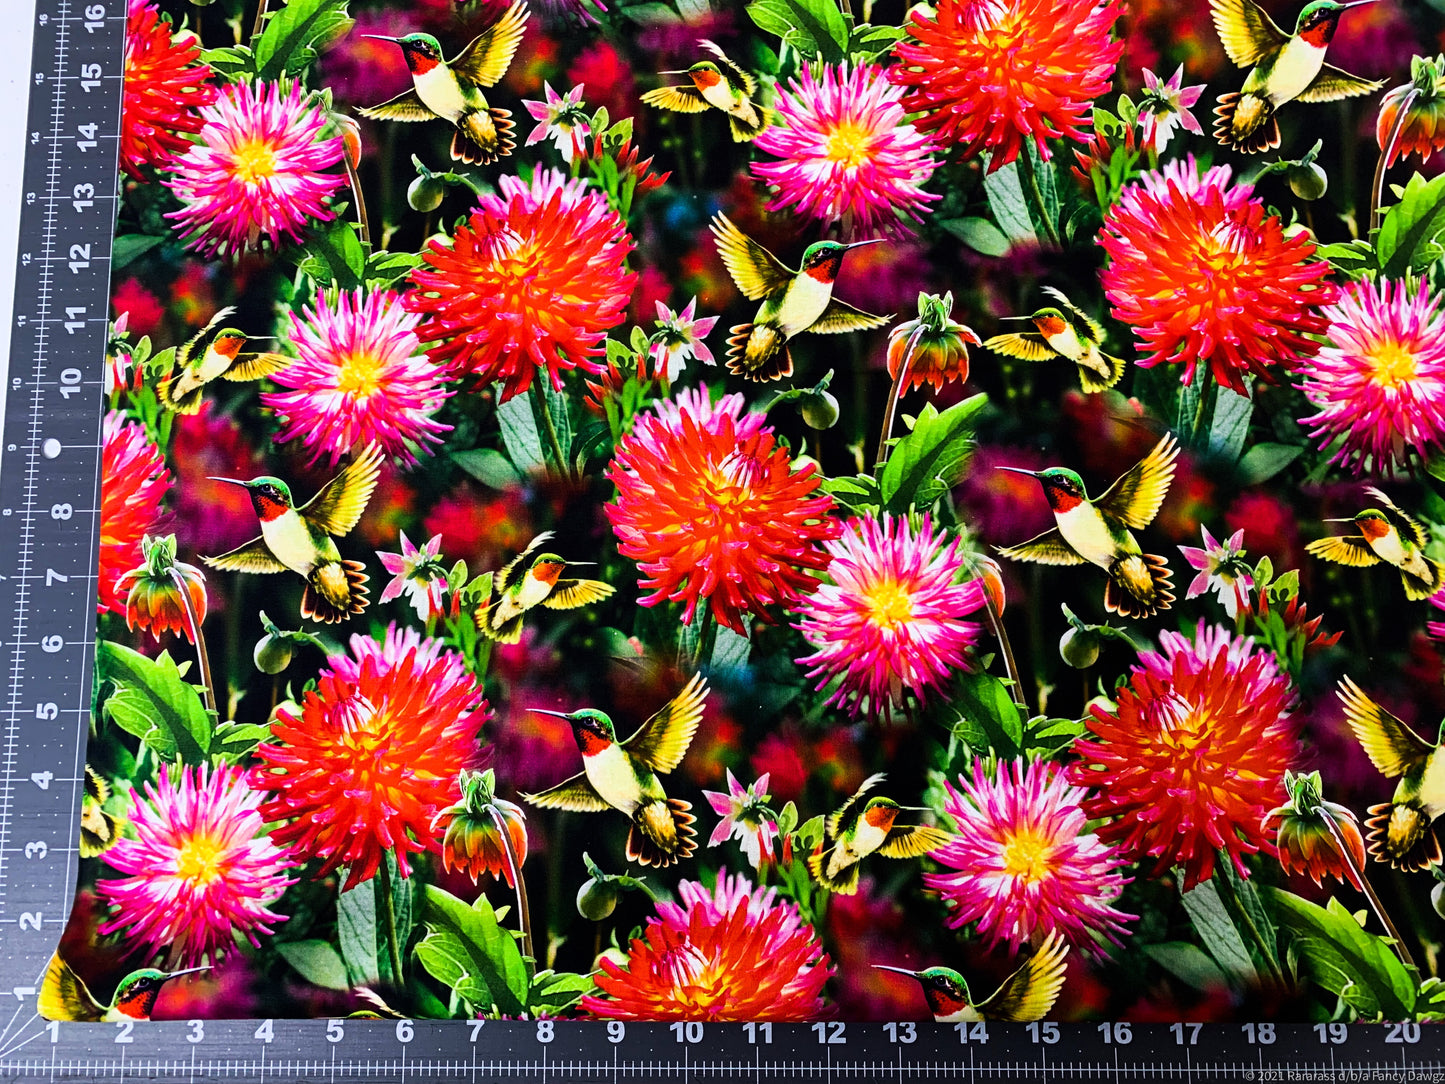 Dahlias and Hummingbirds fabric GG00379C floral fabric